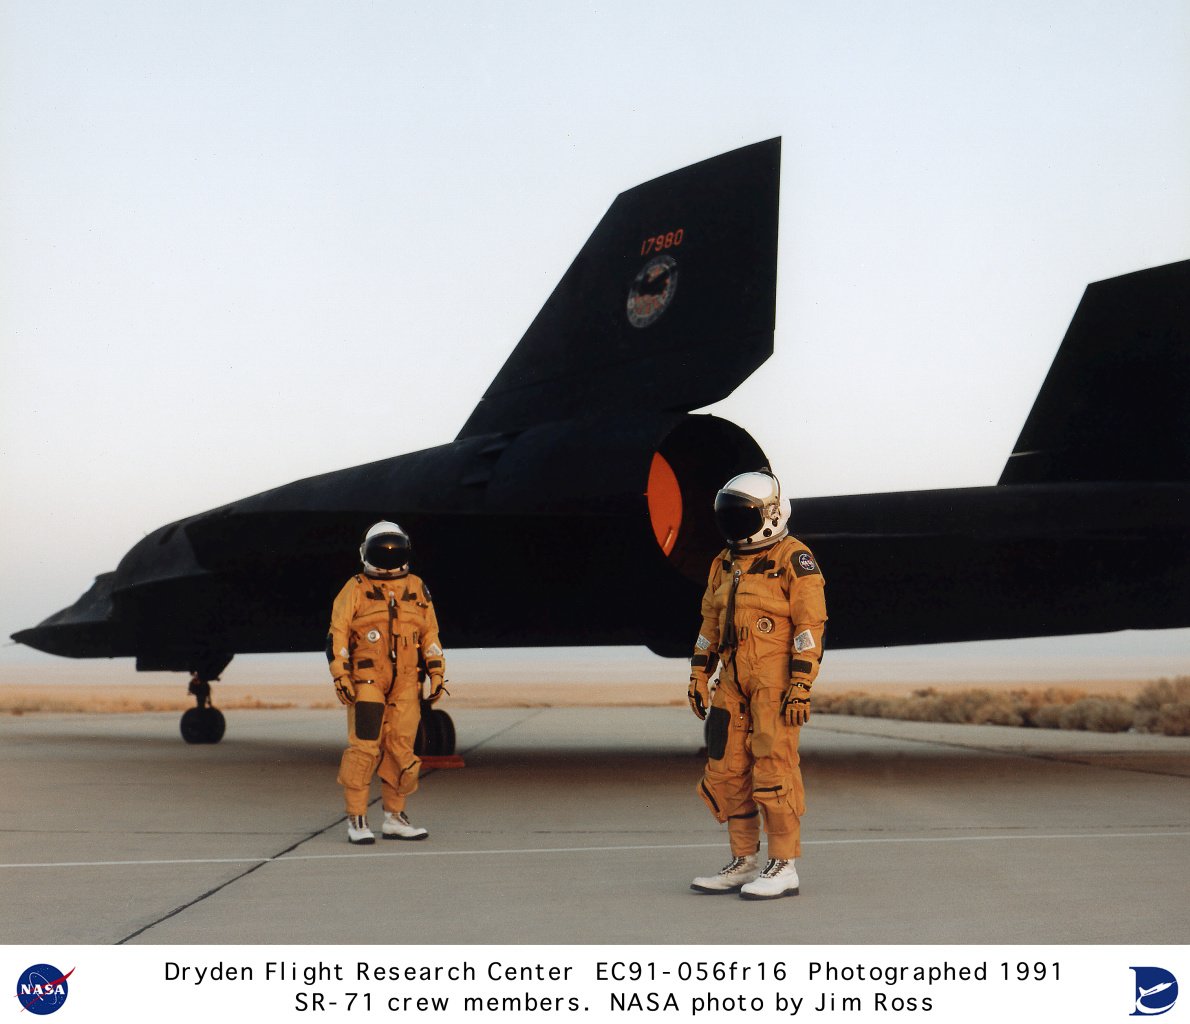 Le SR-71 Blackbird et son équipage